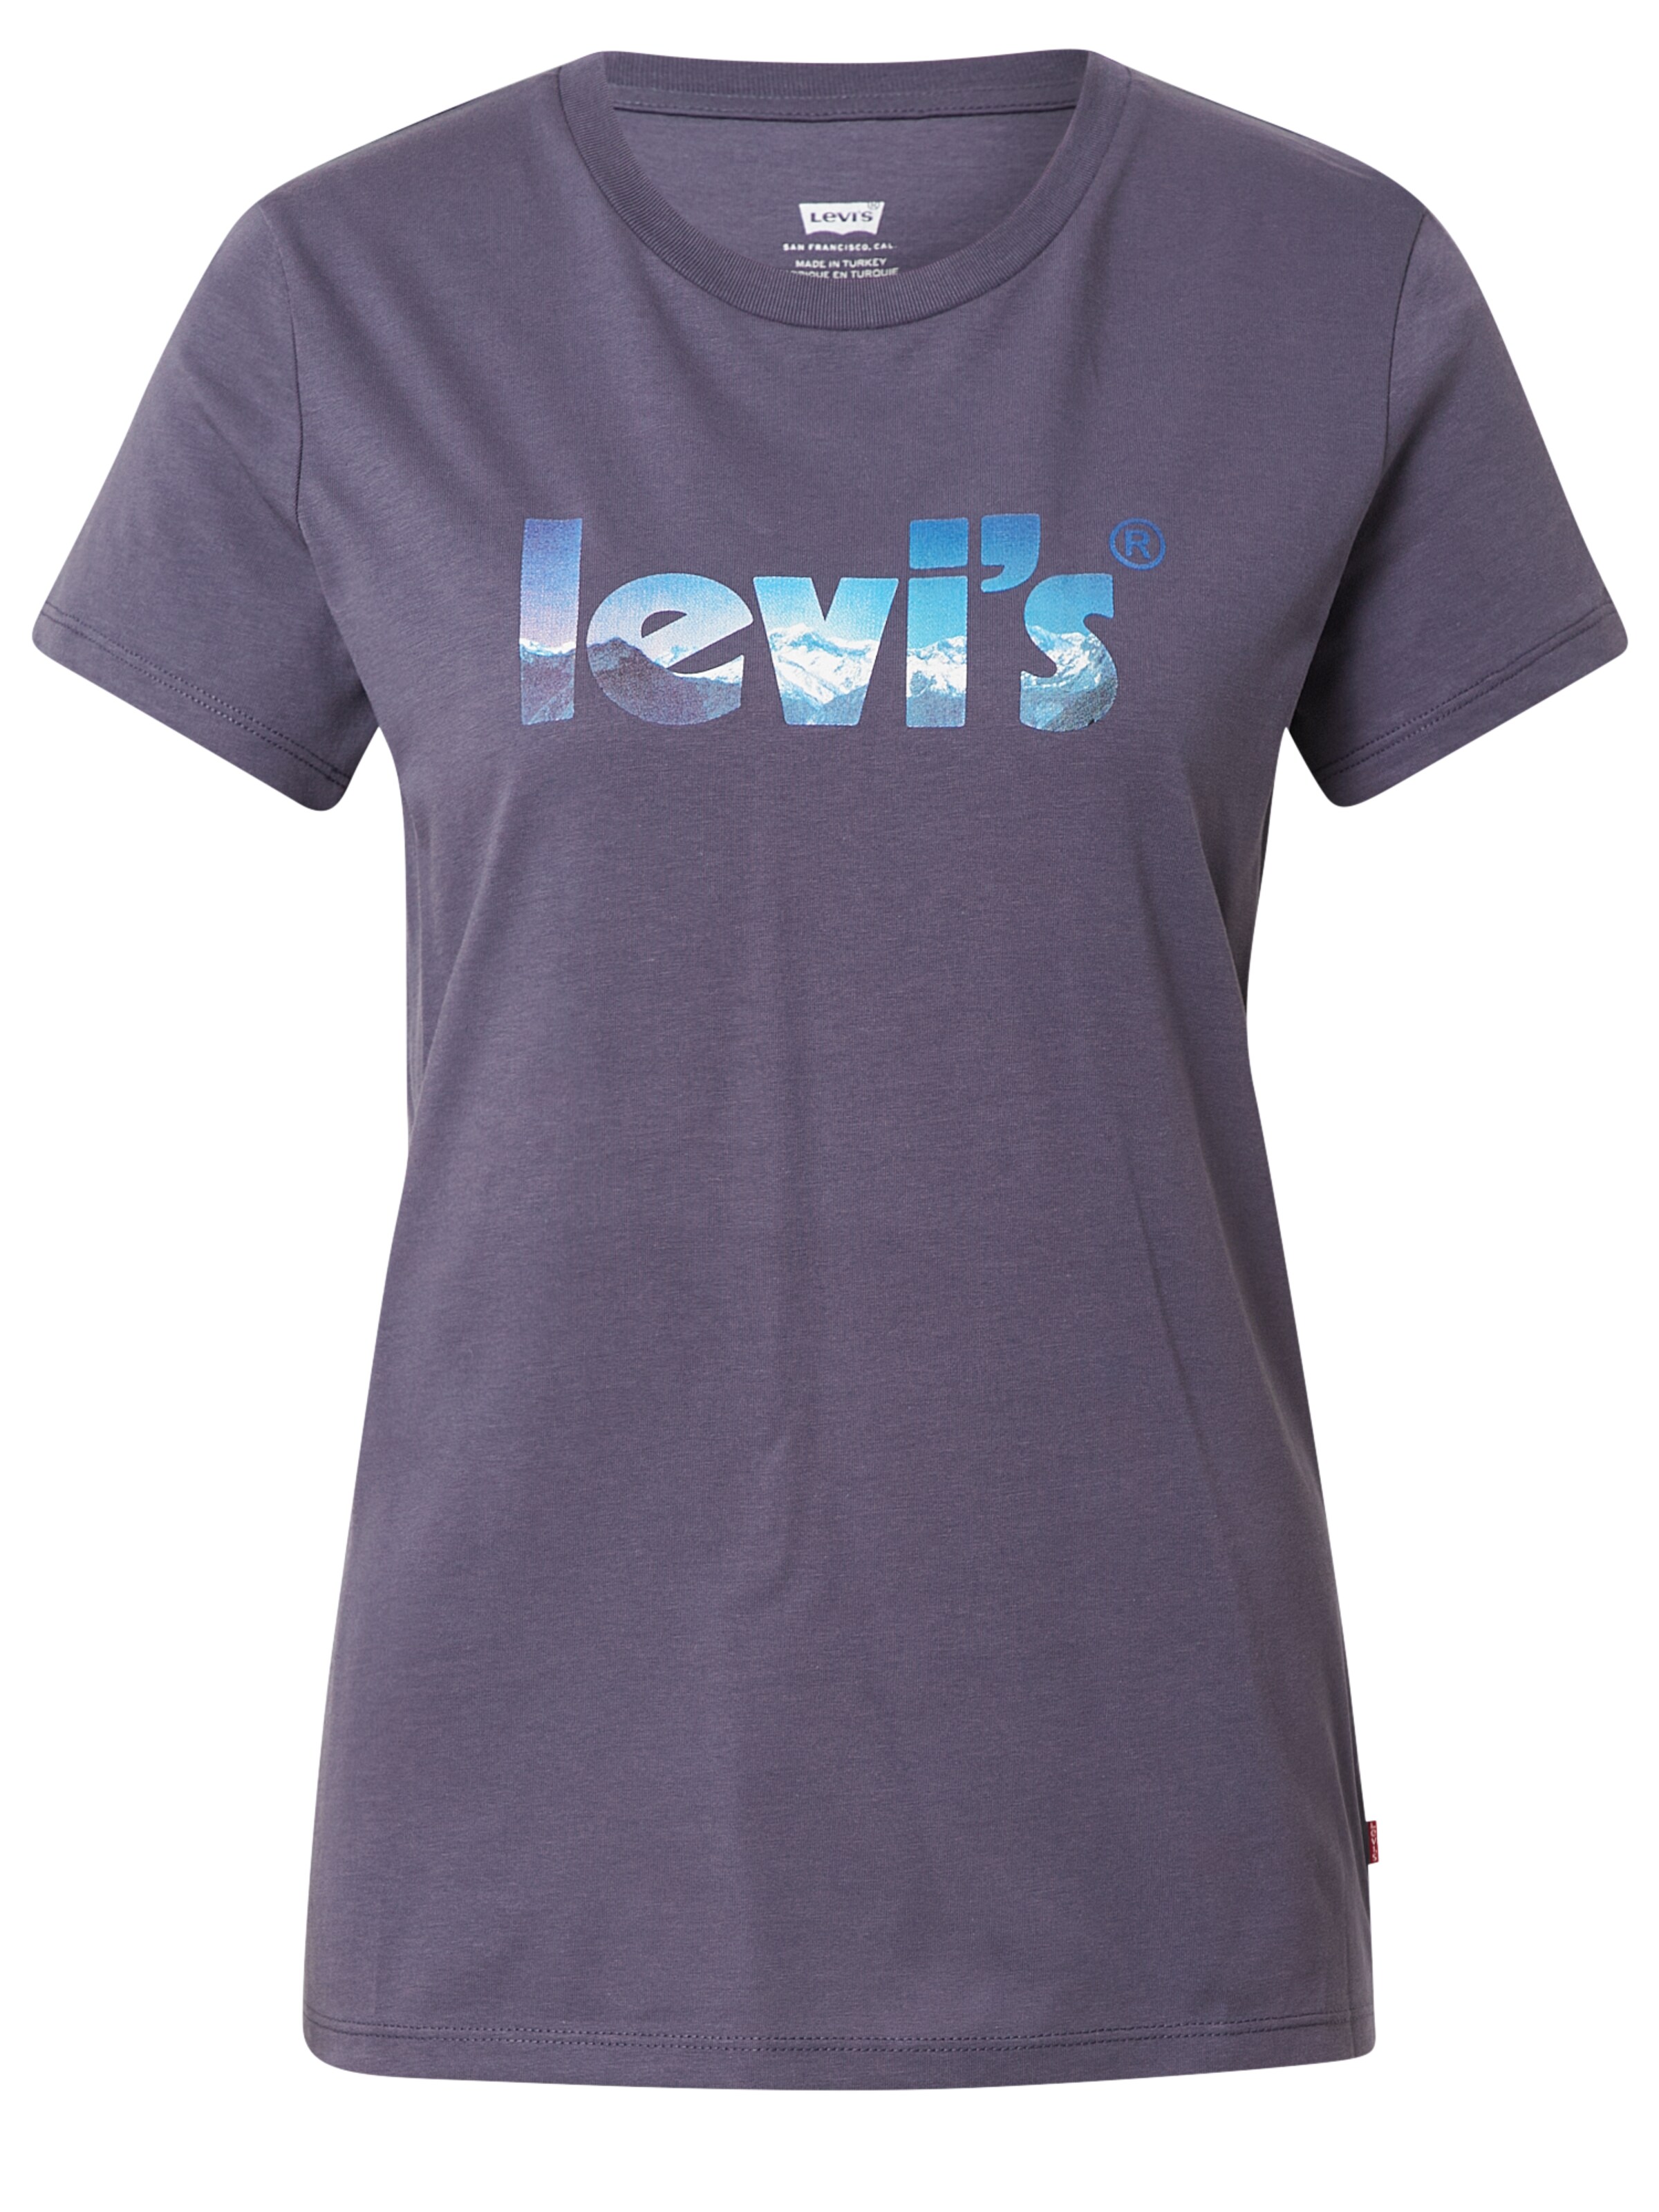 T-shirts et tops T-shirt LEVI'S en Blanc 